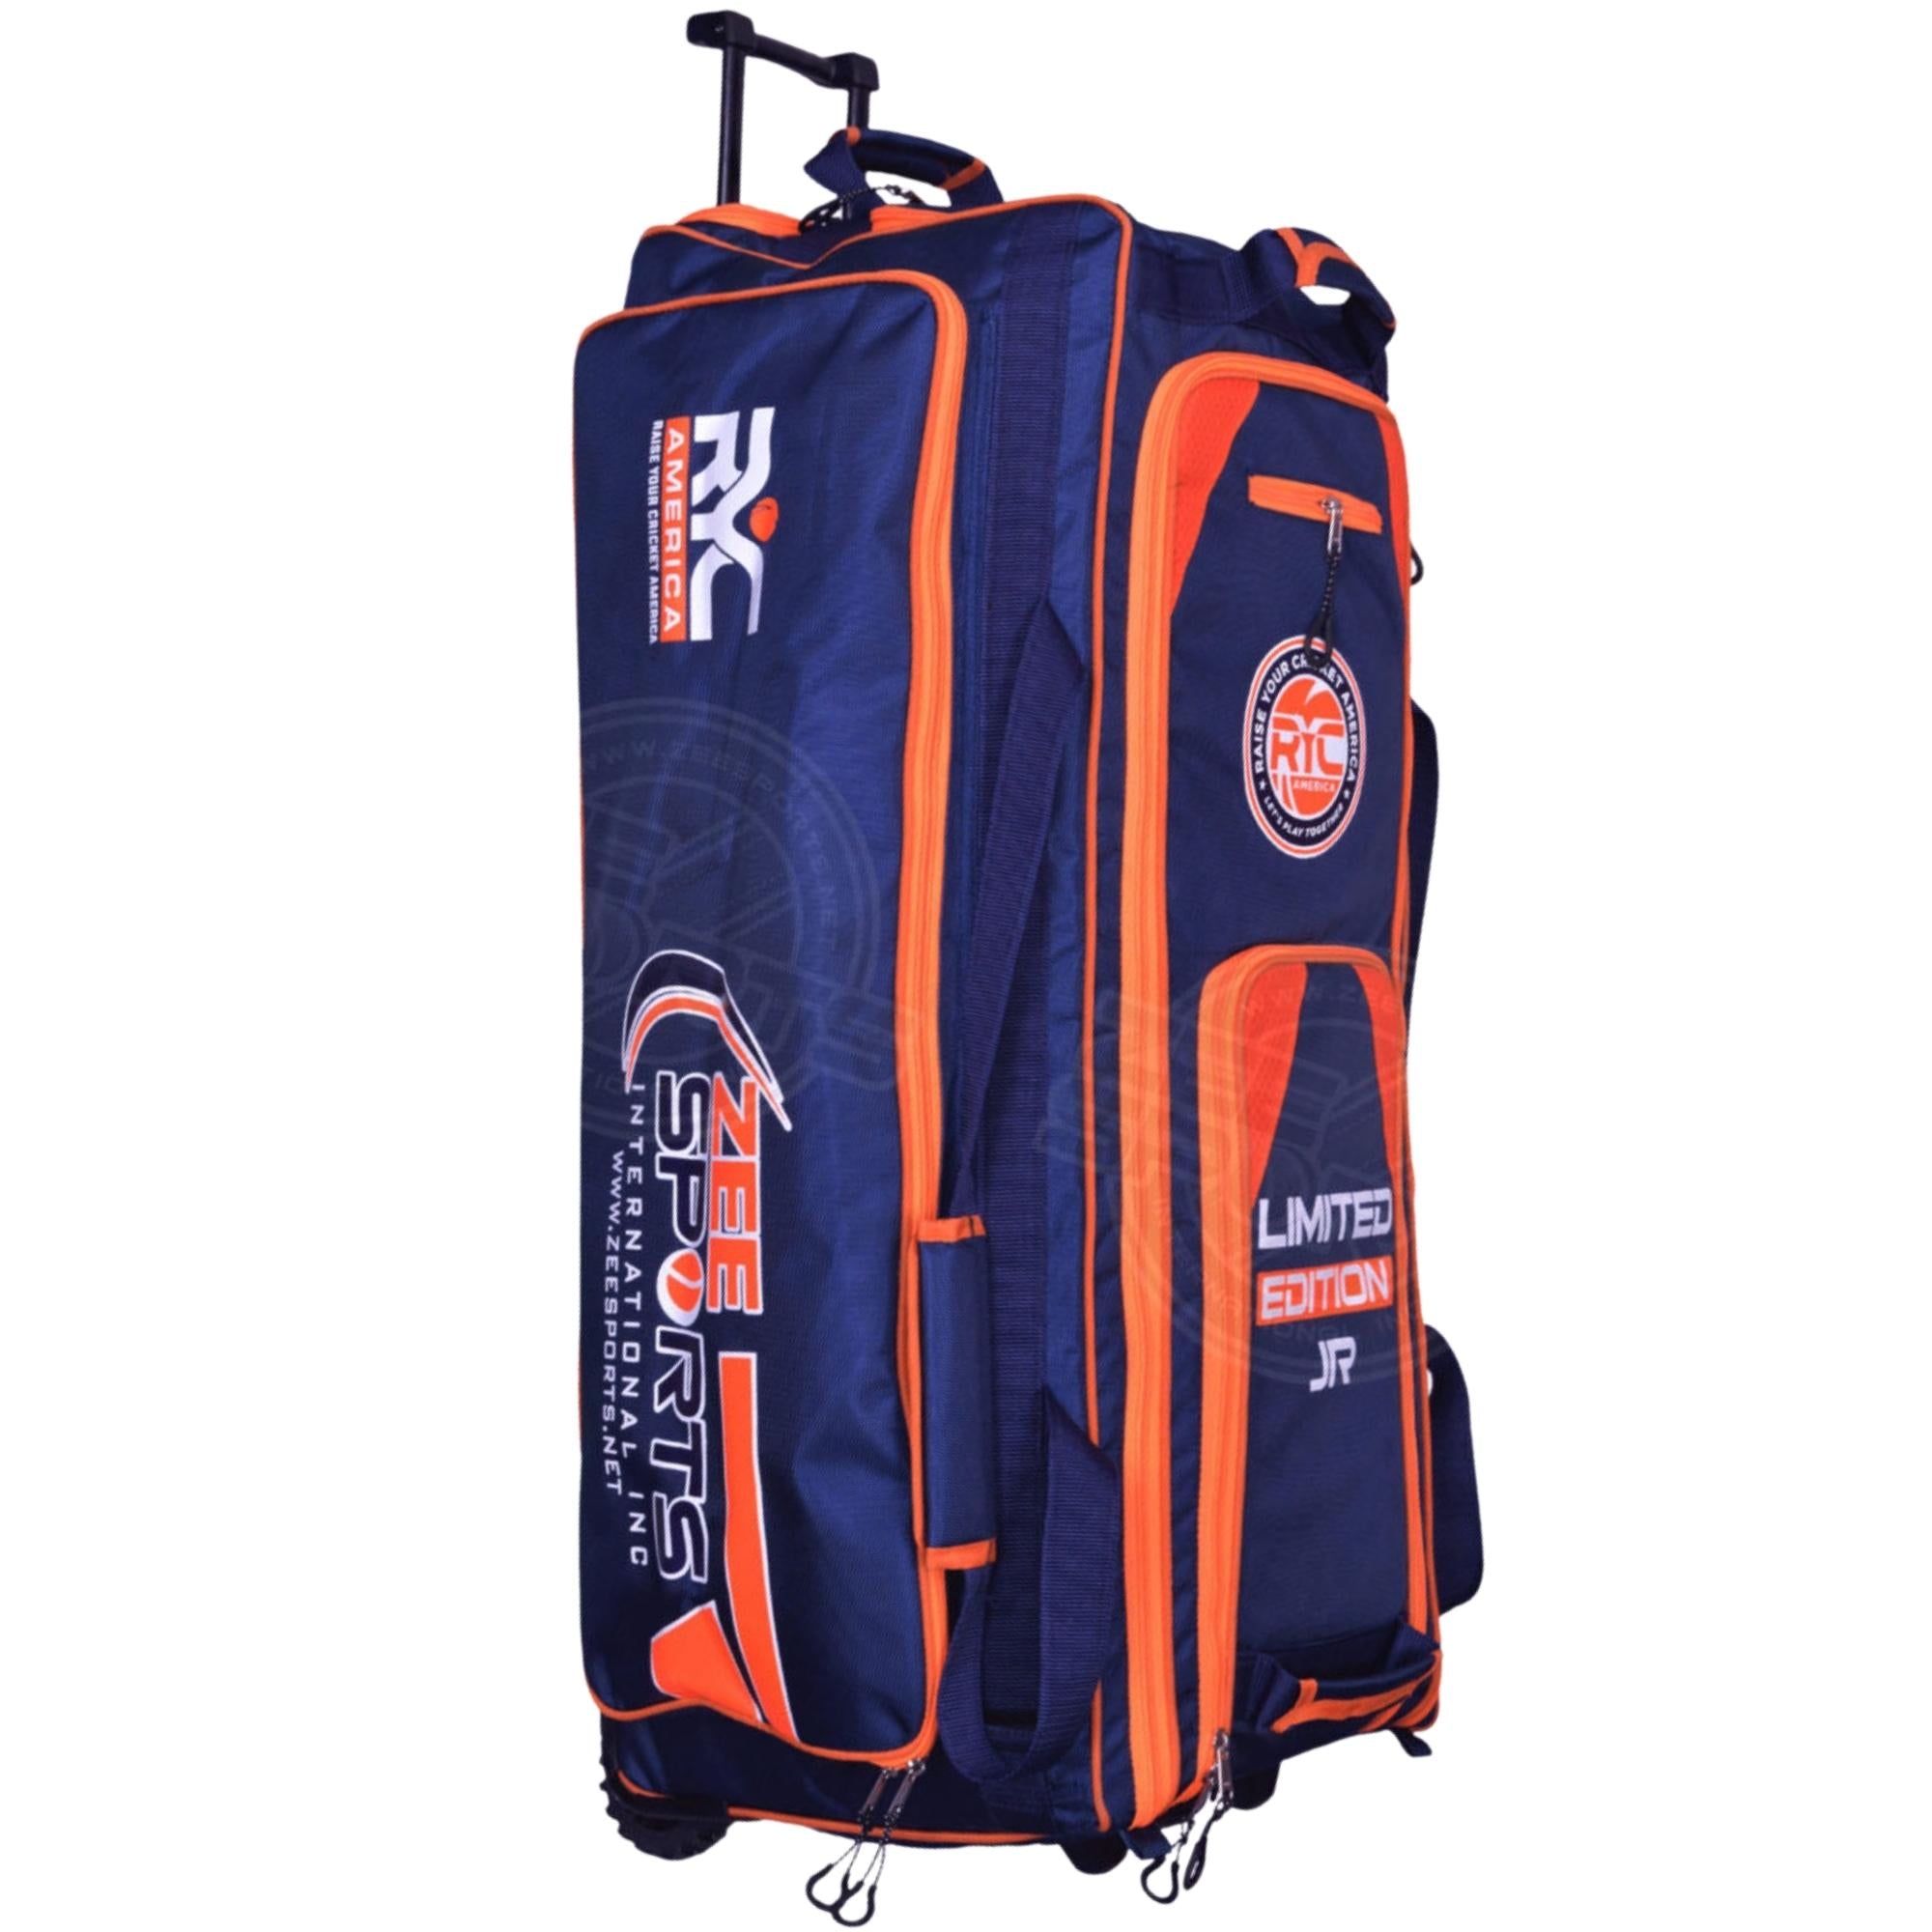 Zee Sports Kit Bag Limited Edition Jr. Blue Orange